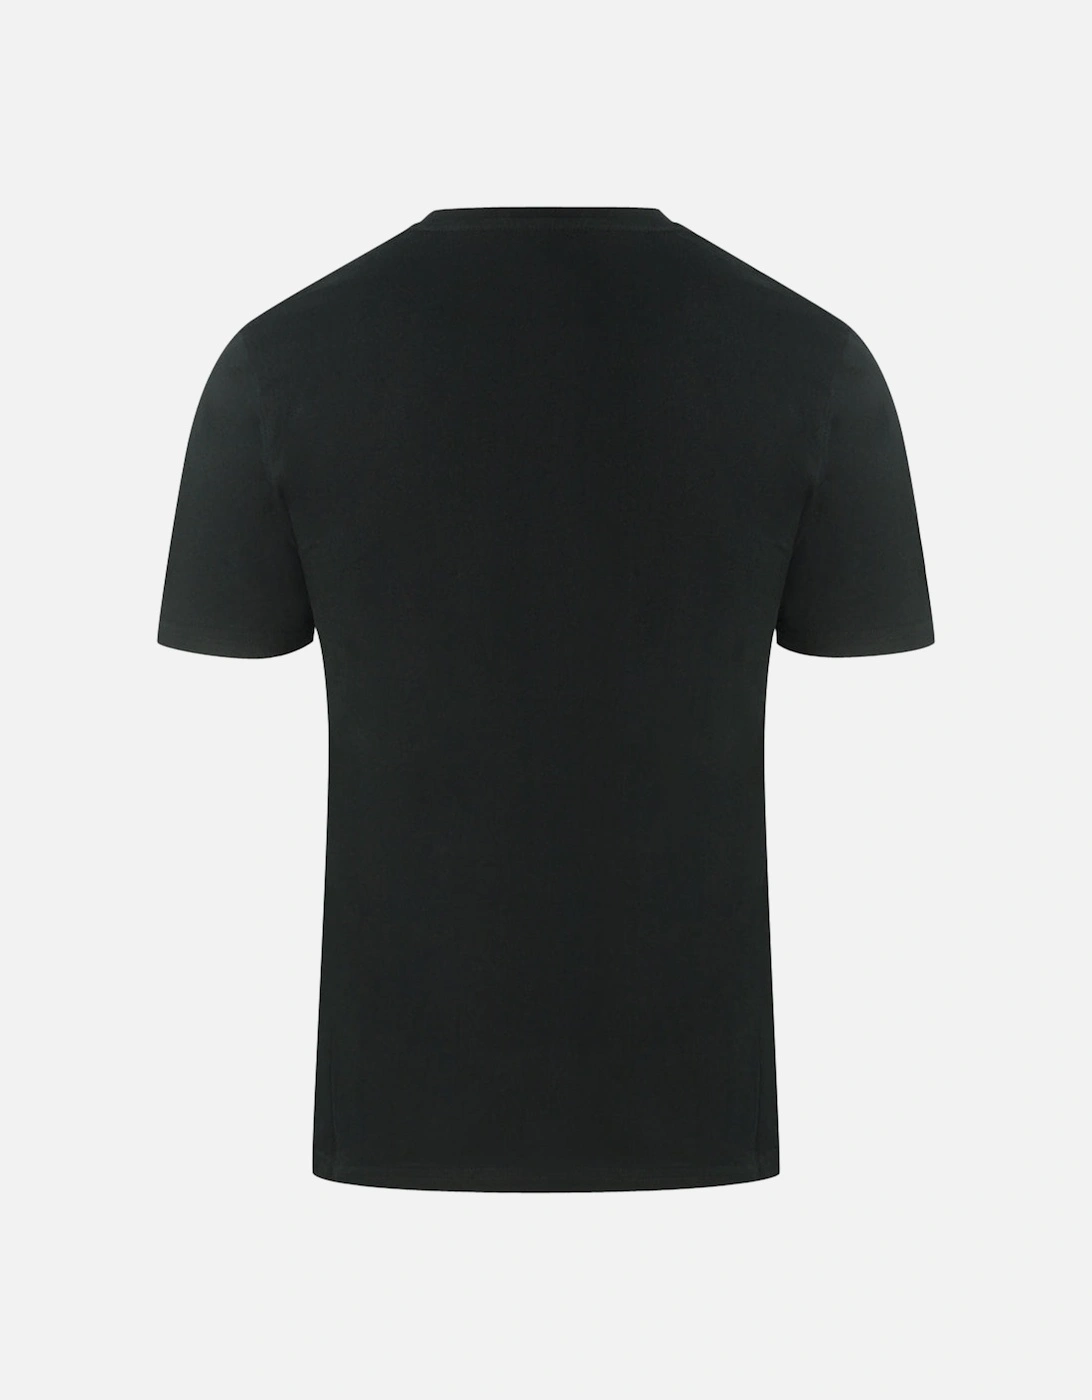 Est 1957 Black T-Shirt